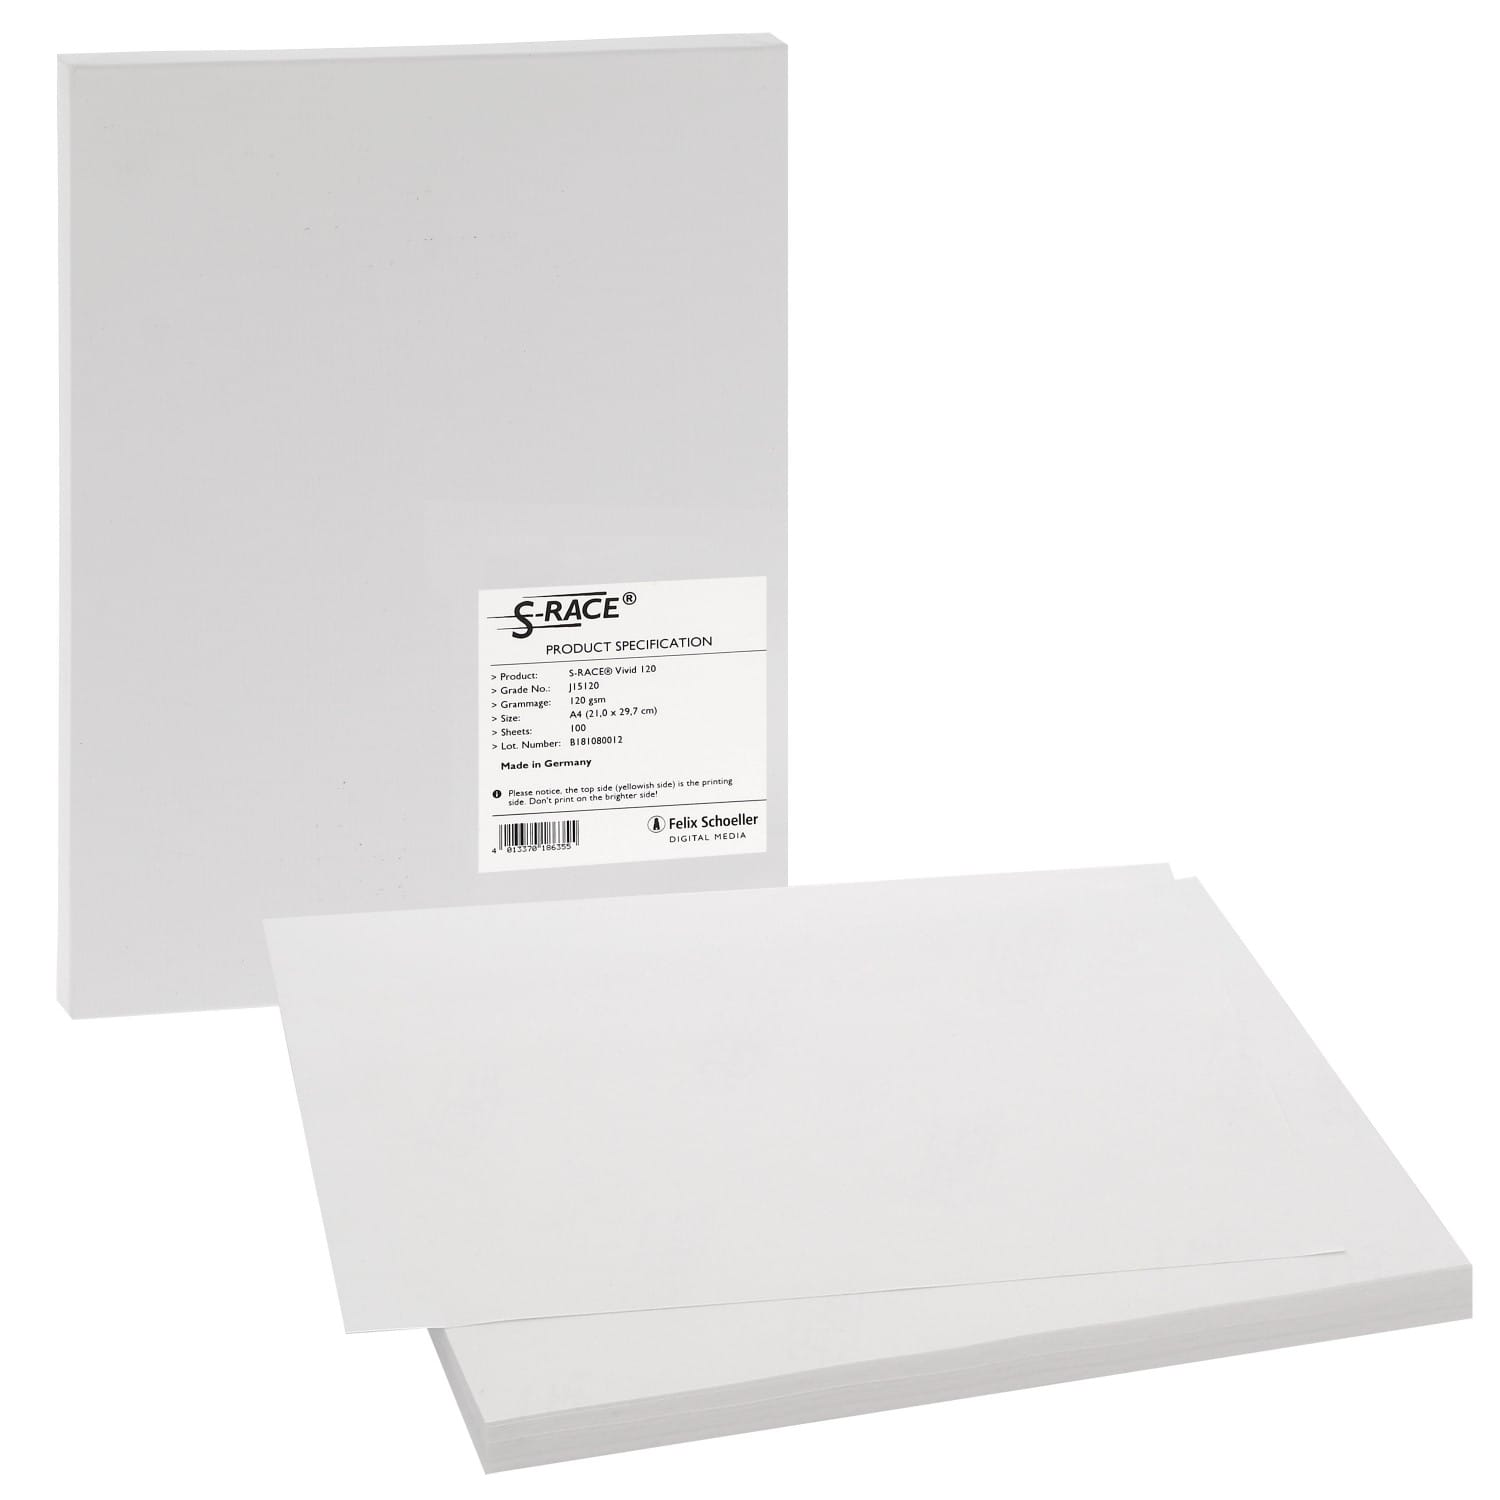 Papier sublimation CANSON Digital Creative Transfert pour T-shirt blanc  140g - A4 (21x29,7cm) - 10 feuilles